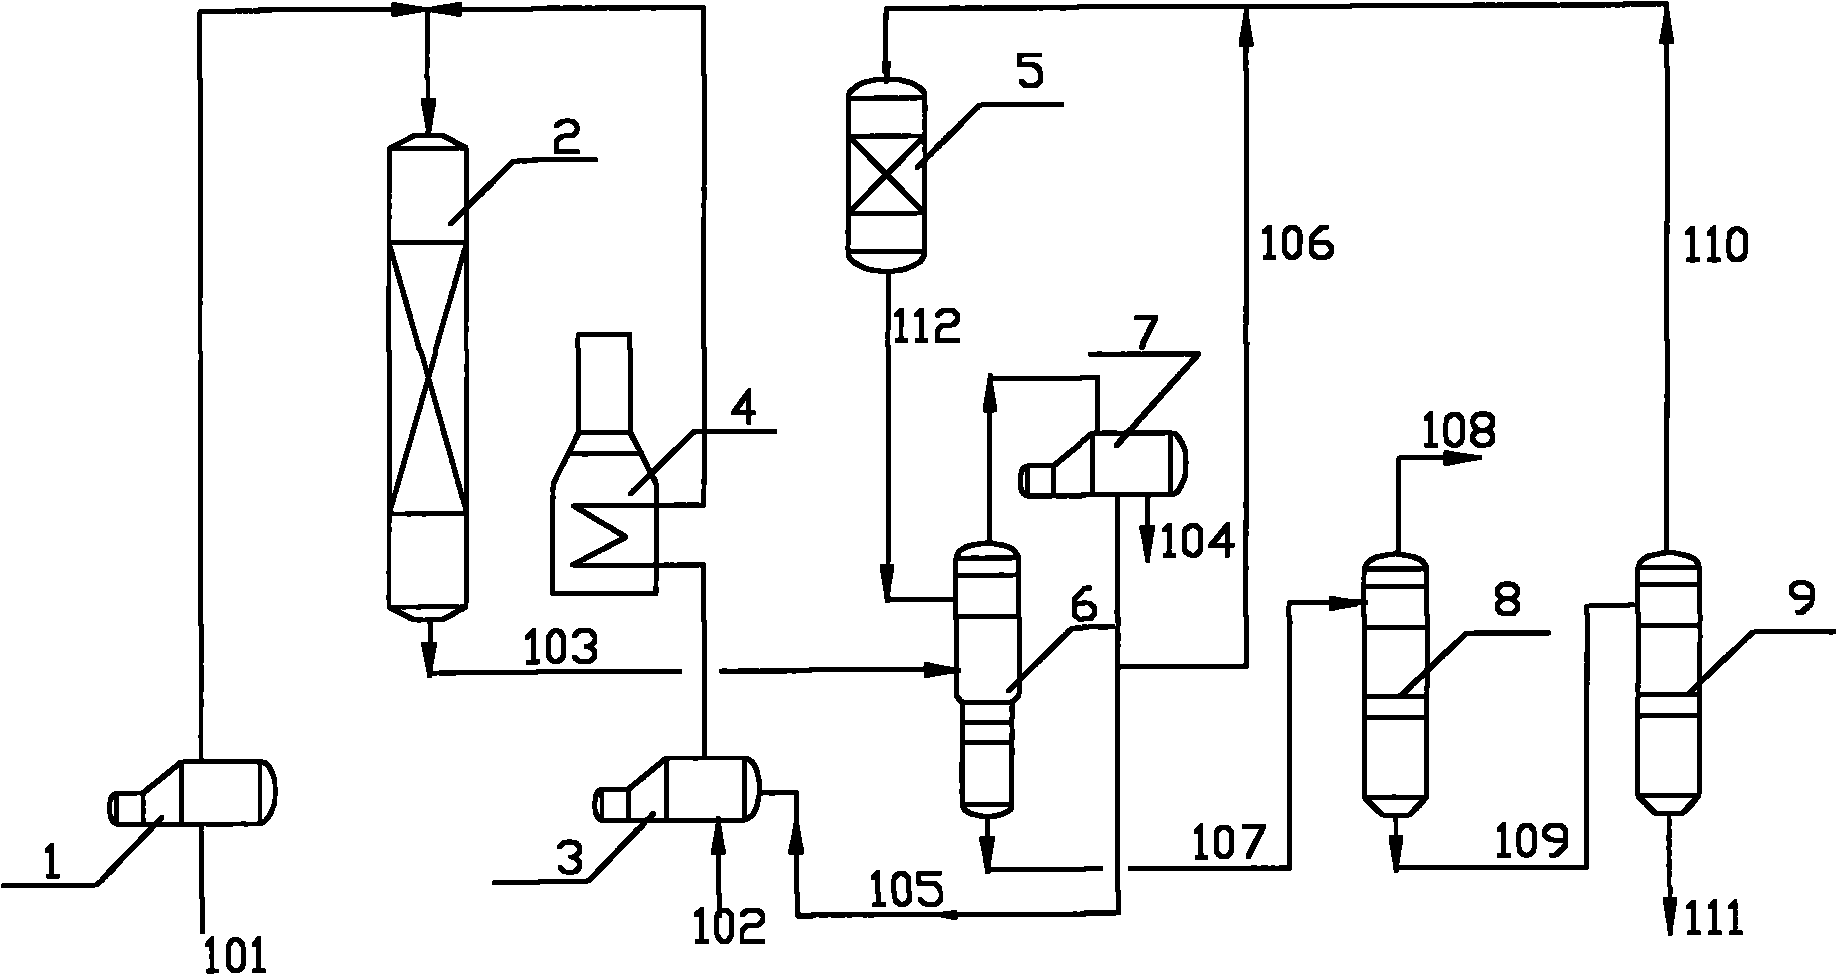 Method for synthesizing ethylbenzene from ethanol and benzene